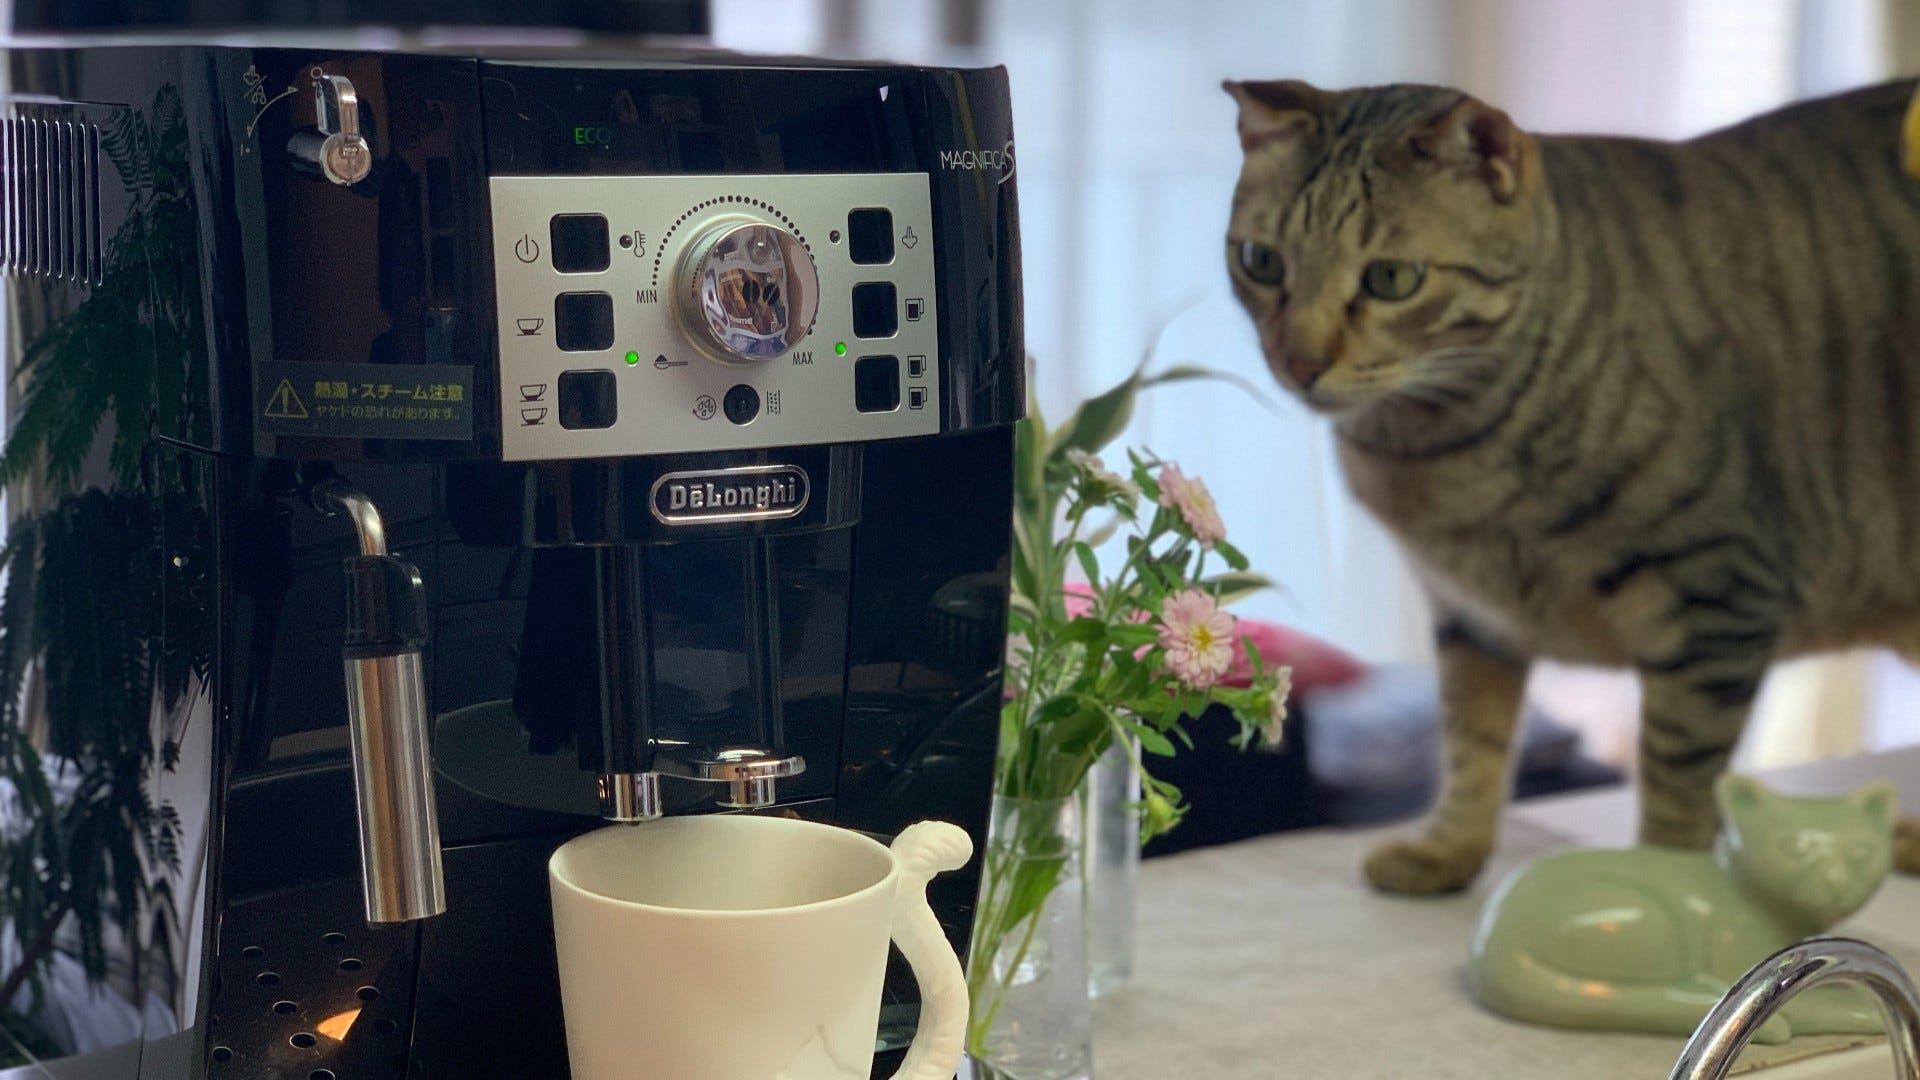 テレワークも家カフェで。デロンギ全自動コーヒーマシンを使って